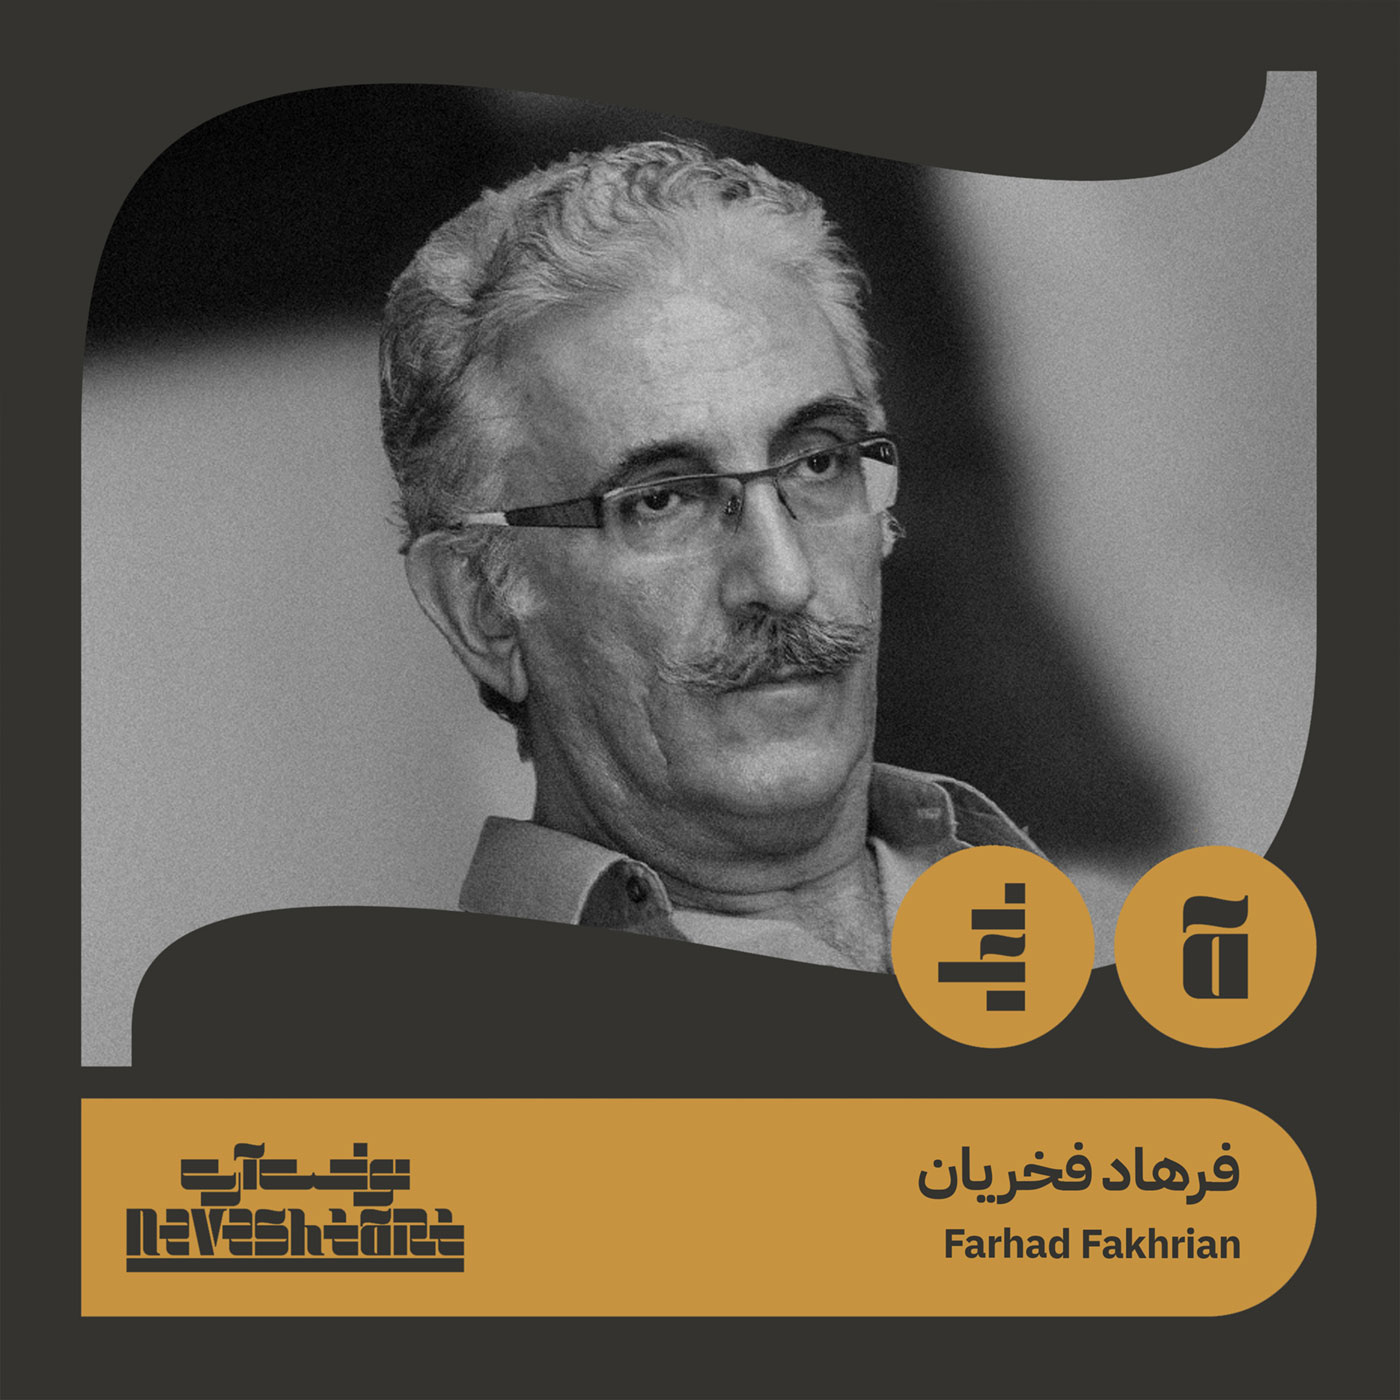 Farhad Fakhrian